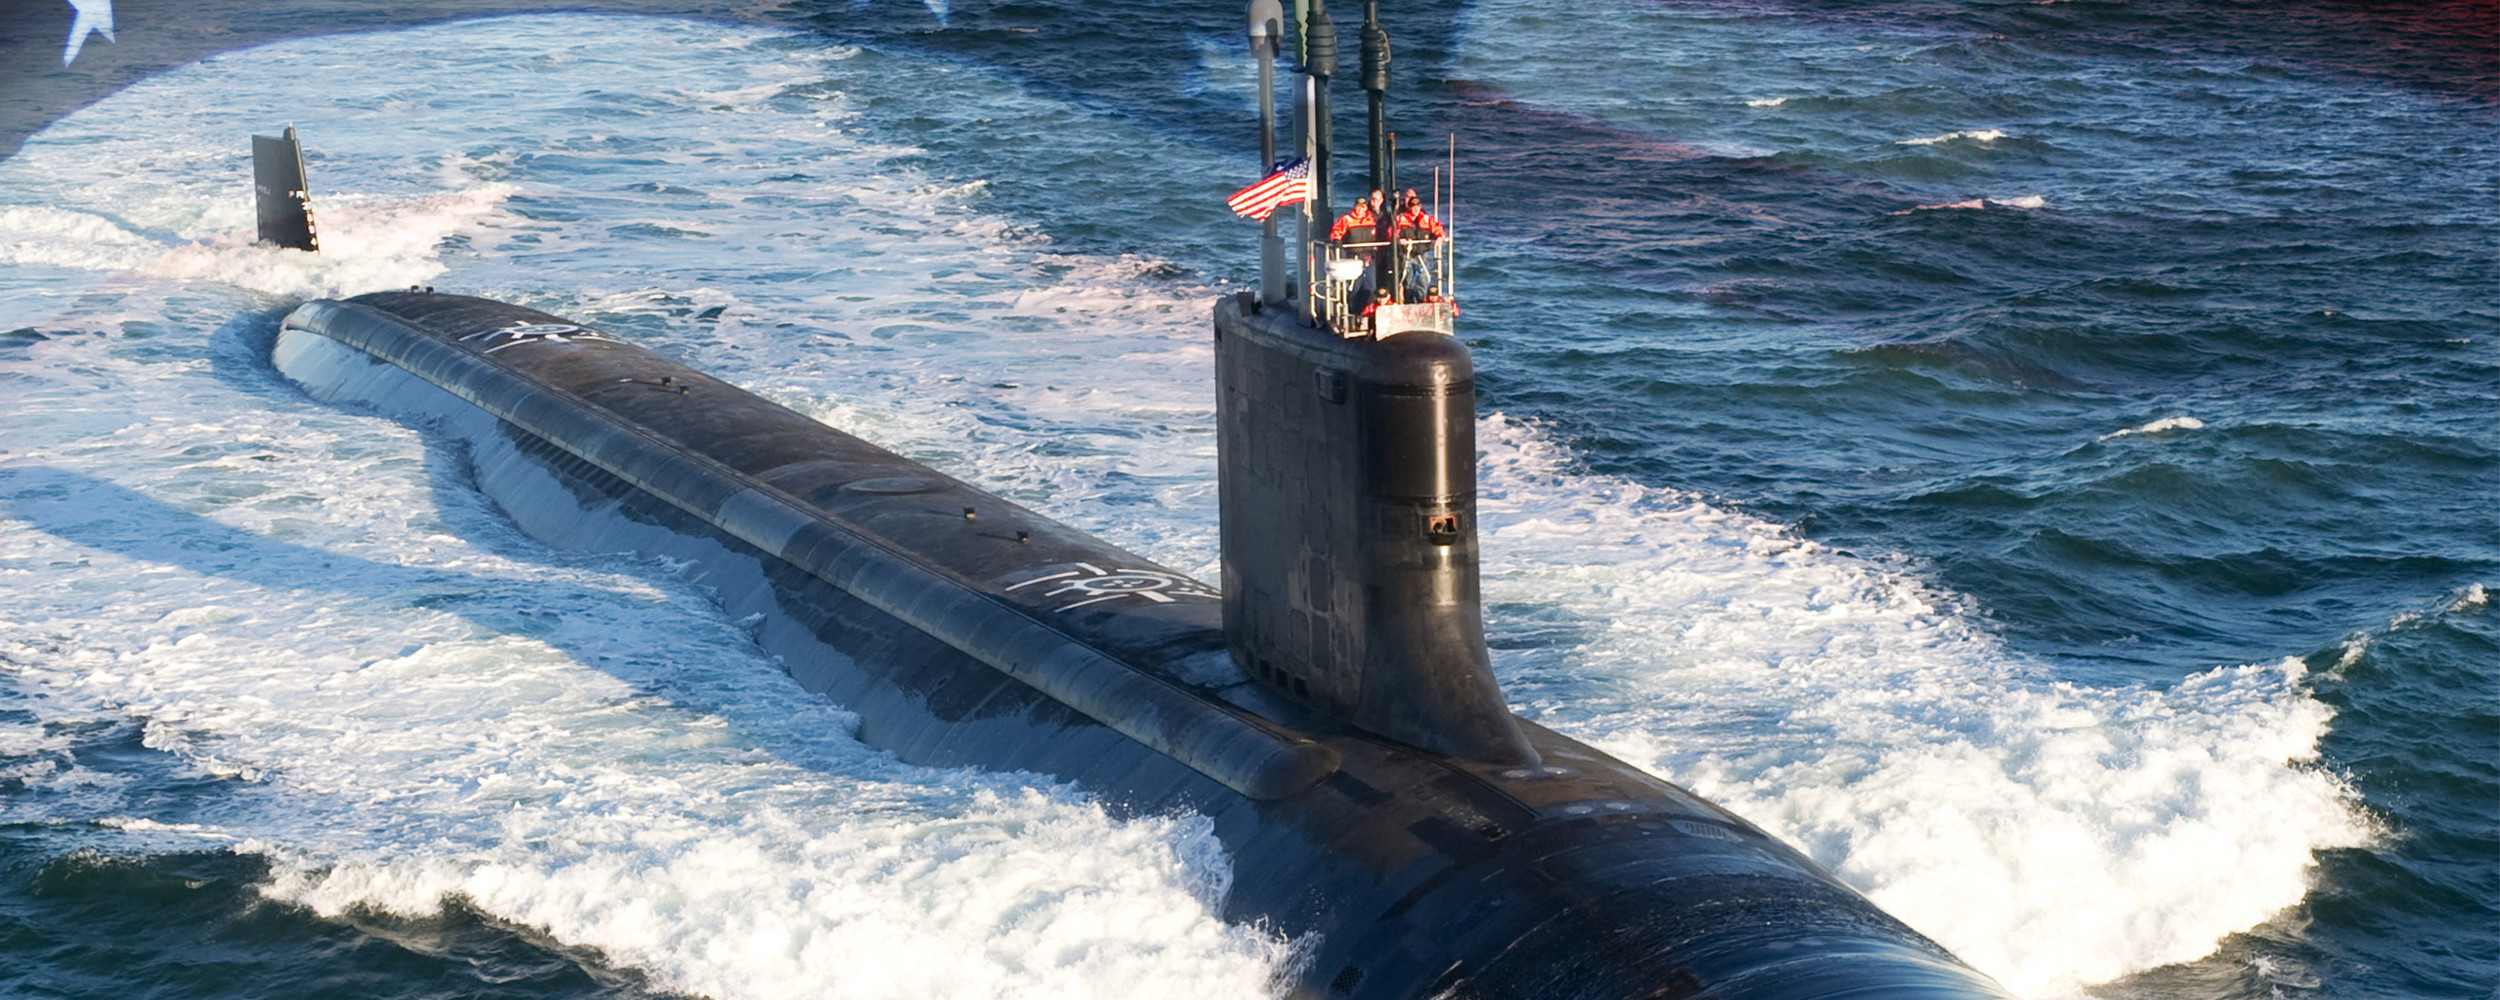 photo of submarine